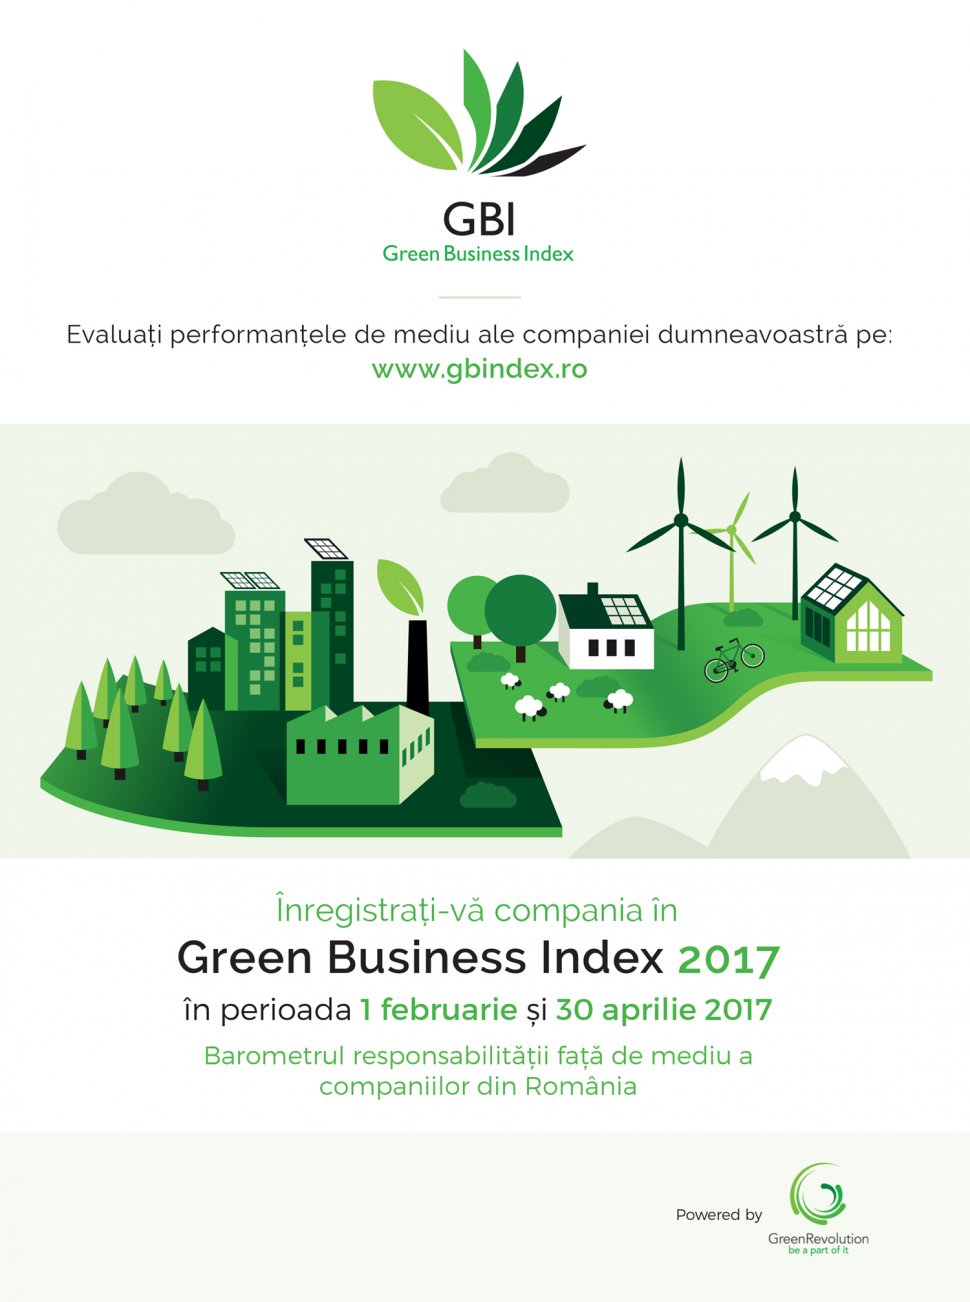 Green Business Index, barometrul responsabilității față de mediu a companiilor din România, deschide cea de-a șaptea ediție 